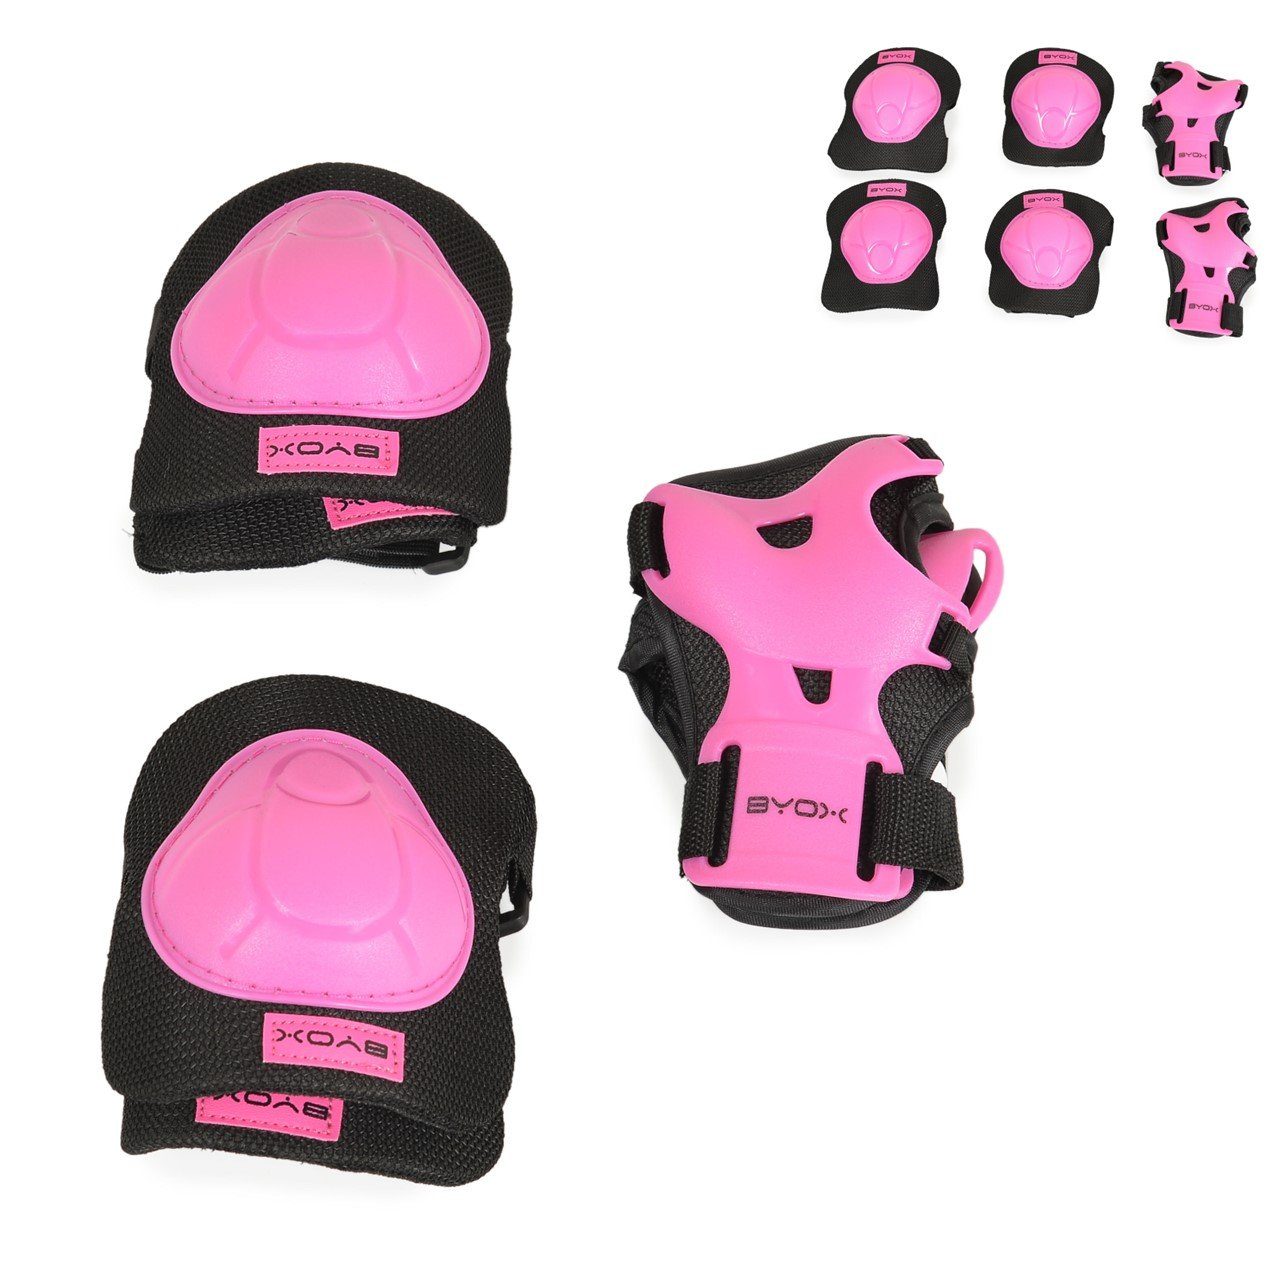 Byox und H110, Protektoren Handgelenk- Knieschützer Ellenbogen- Protektoren-Set pink Schutzausrüstung